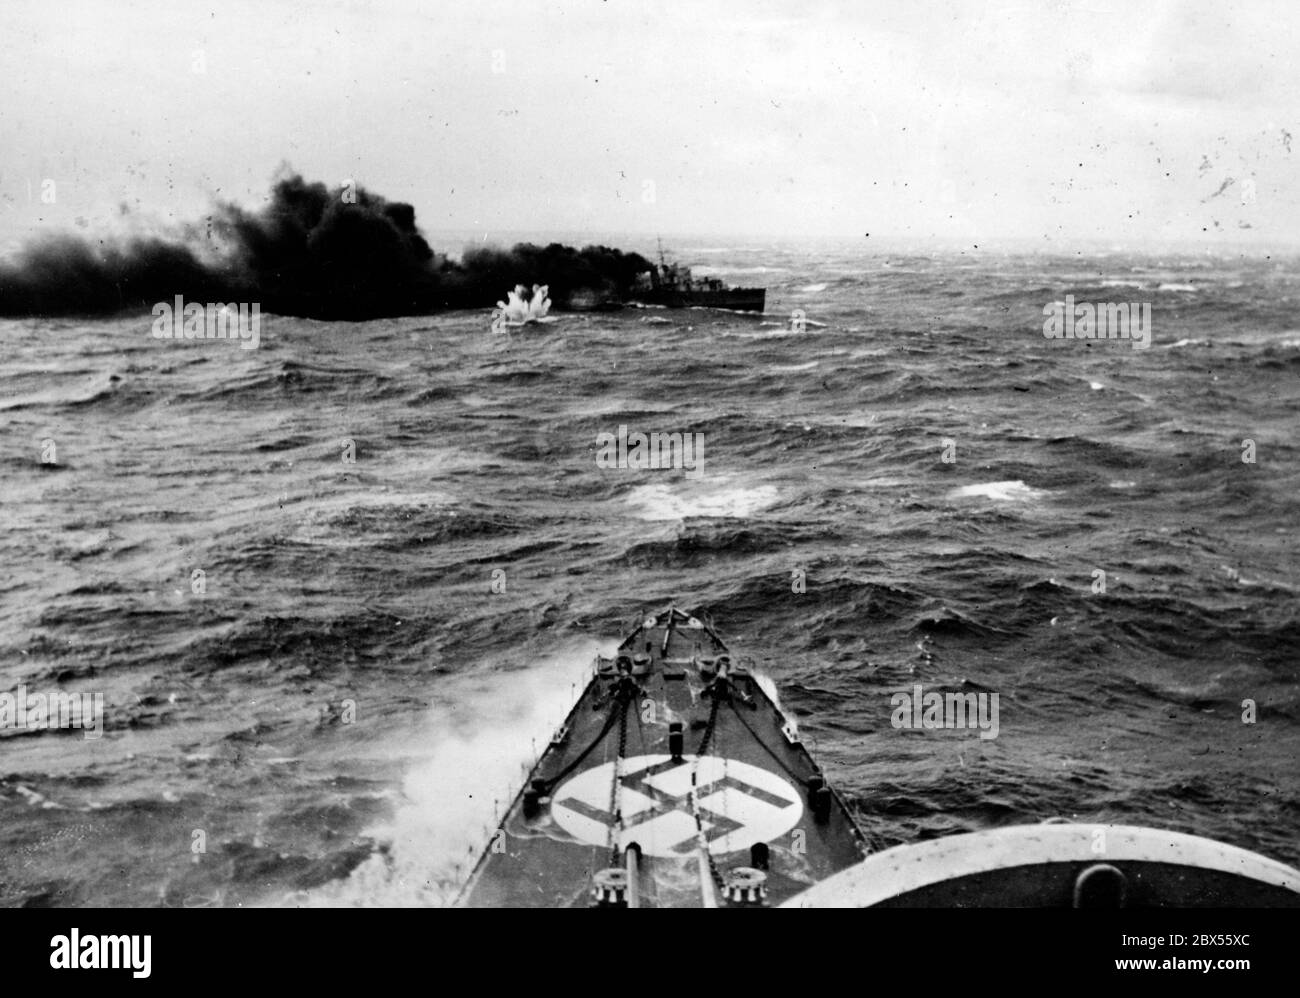 Ein englischer Zerstörer wird bei einer Kreuzfahrt nach Norwegen angegriffen. Im Vordergrund steht der Bug eines deutschen Kriegsschiffes. Dies ist wahrscheinlich der Untergang des britischen Zerstörers HMS Glowworm durch den deutschen schweren Kreuzer Admiral Hipper am 08.04.1940. Stockfoto